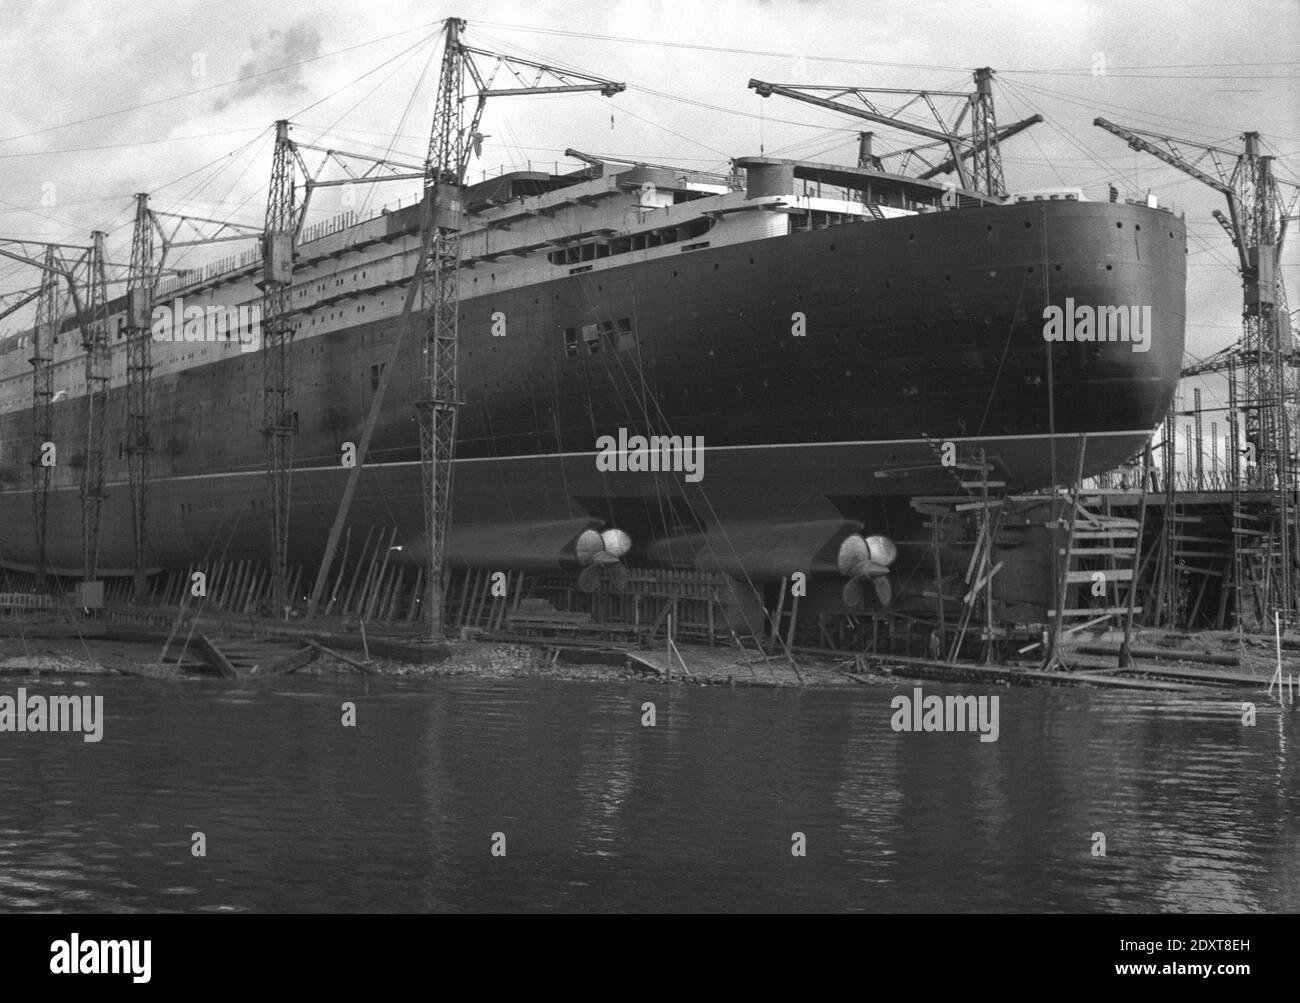 Années 1930, historique, le RMS Queen Elizabeth en construction sur le Clyde, Glasgow, Écosse. ROYAUME-UNI. Nommé en l'honneur de l'épouse du roi George VI, il était le plus grand paquebot jamais construit à l'époque. Bien qu'officiellement lancé en 1938, le déclenchement de la Seconde Guerre mondiale signifie qu'il est converti en navire de combat pendant les hostilites, avant d'effectuer son premier voyage commercial en 1948. Elle a pris sa retraite en 1968. Banque D'Images